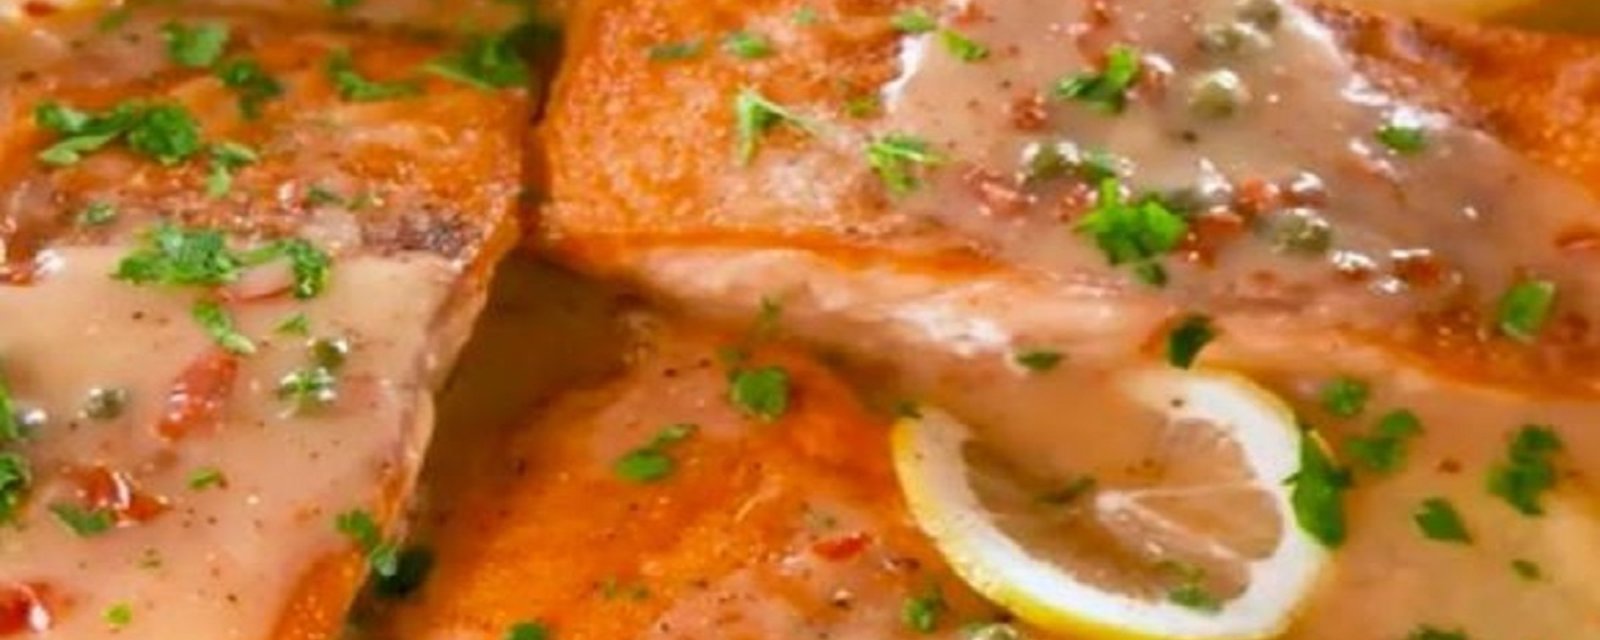 Recette de piccata de saumon prête en seulement 10 minutes!